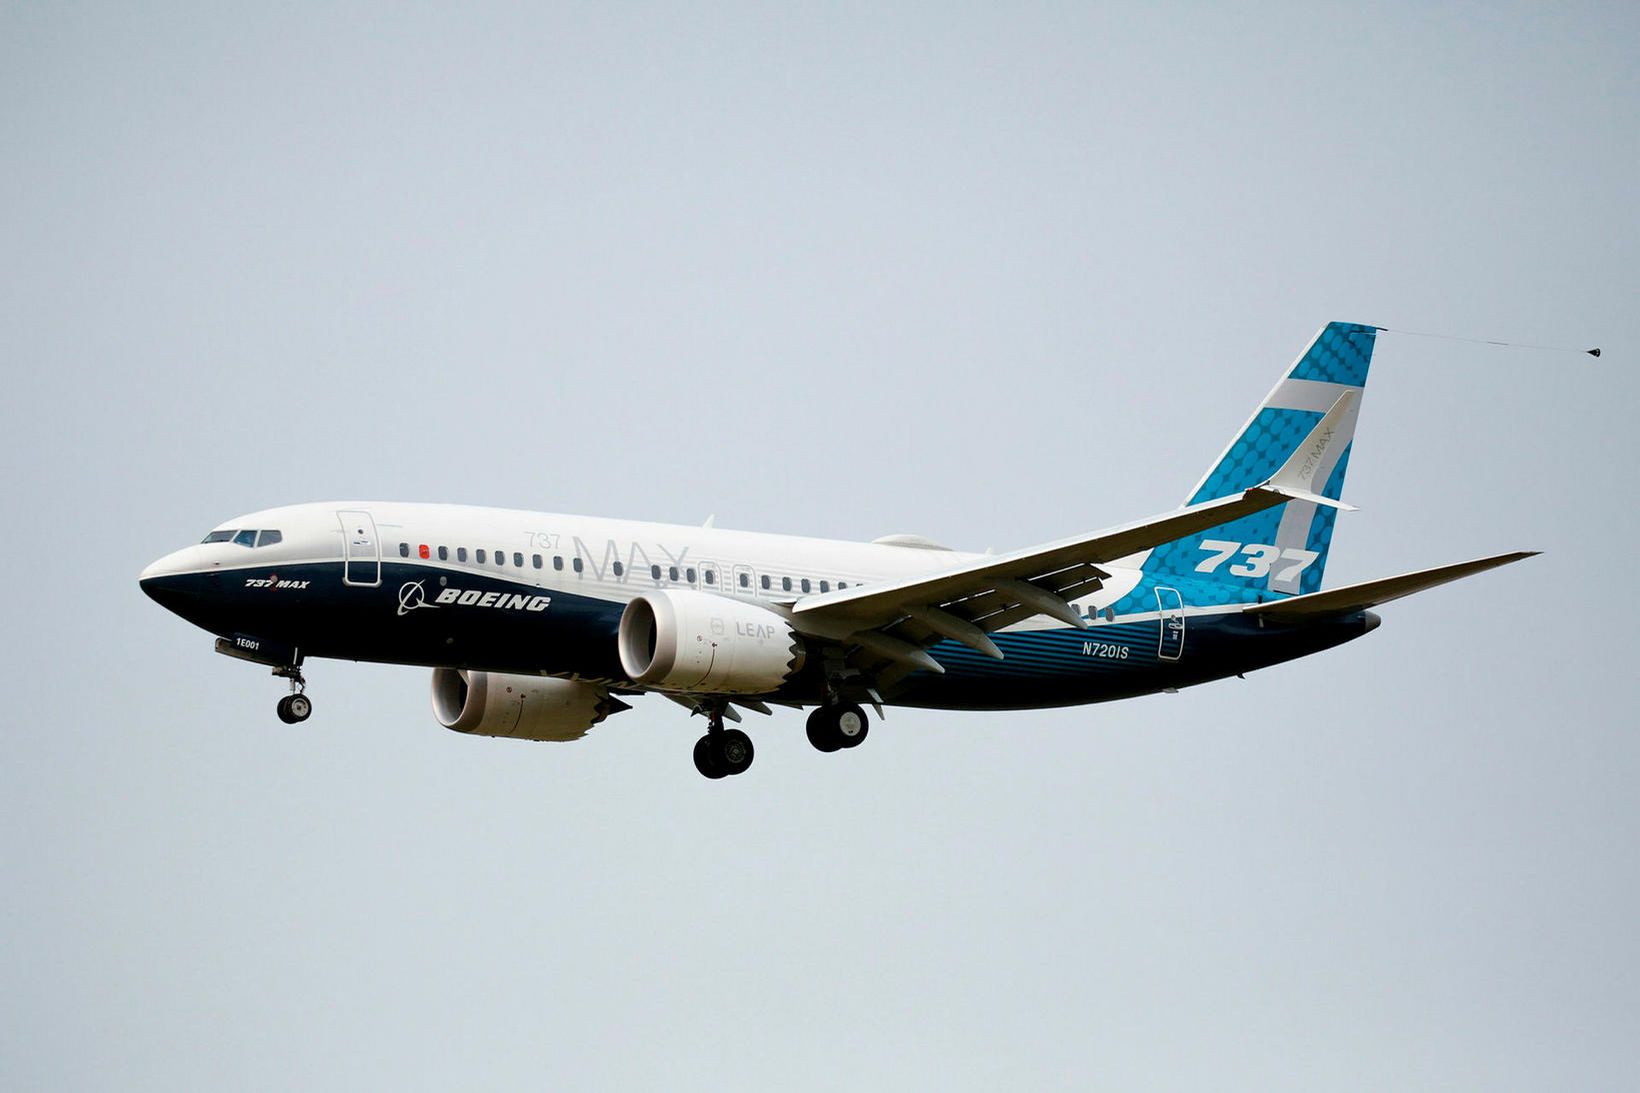 Kyrrsetning Boeing 737-MAX-vélanna hefur staðið í eitt ár og átta …